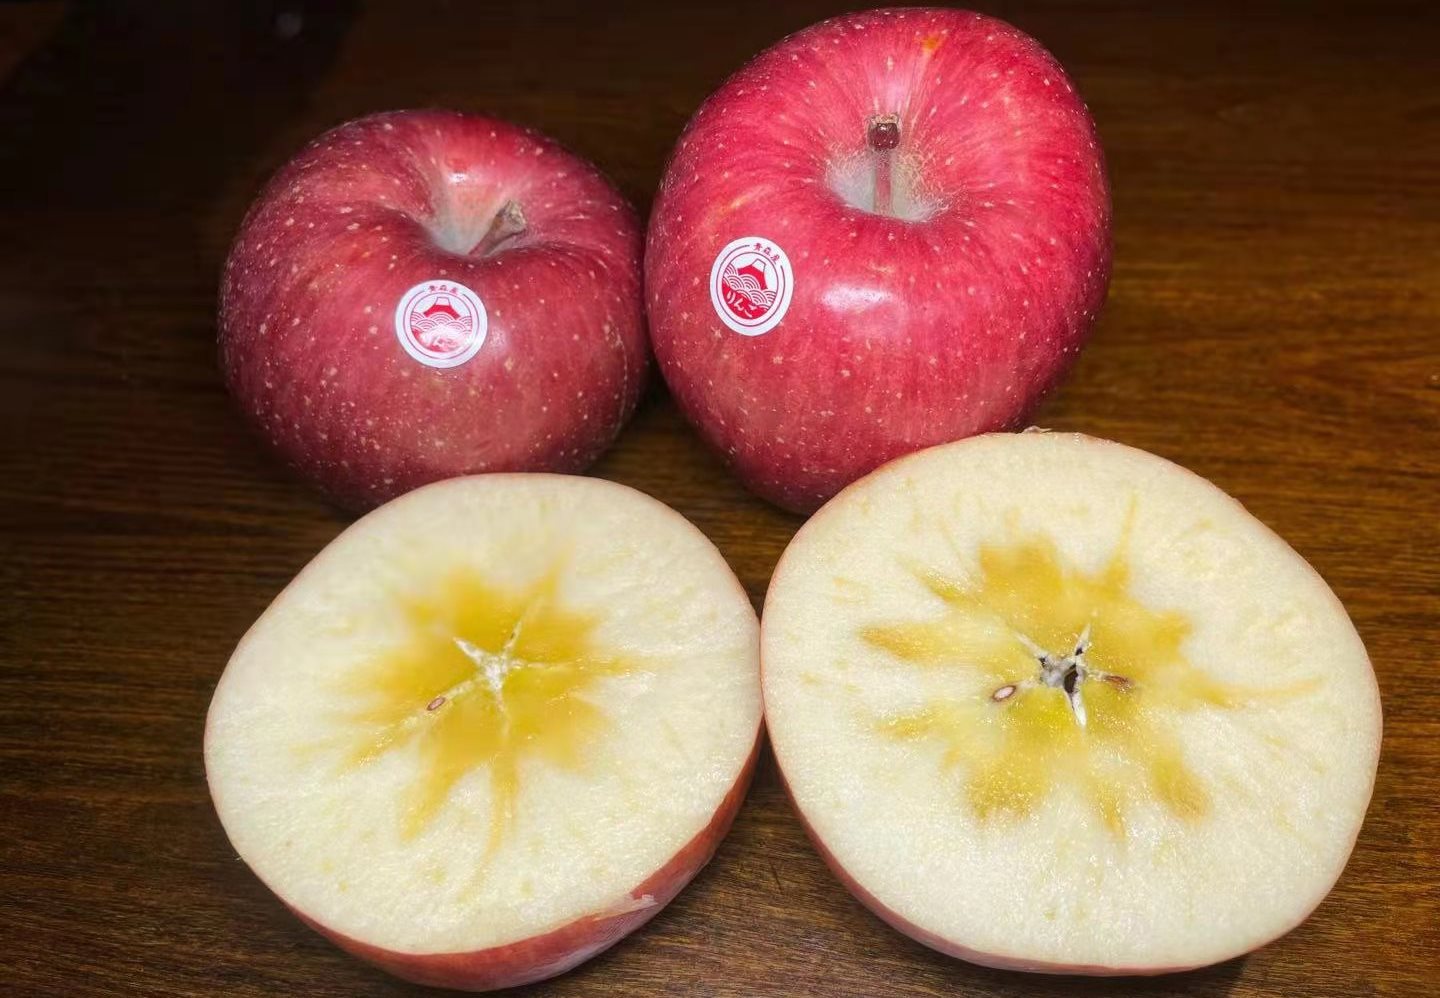 Fuji Apples, Large, Apples